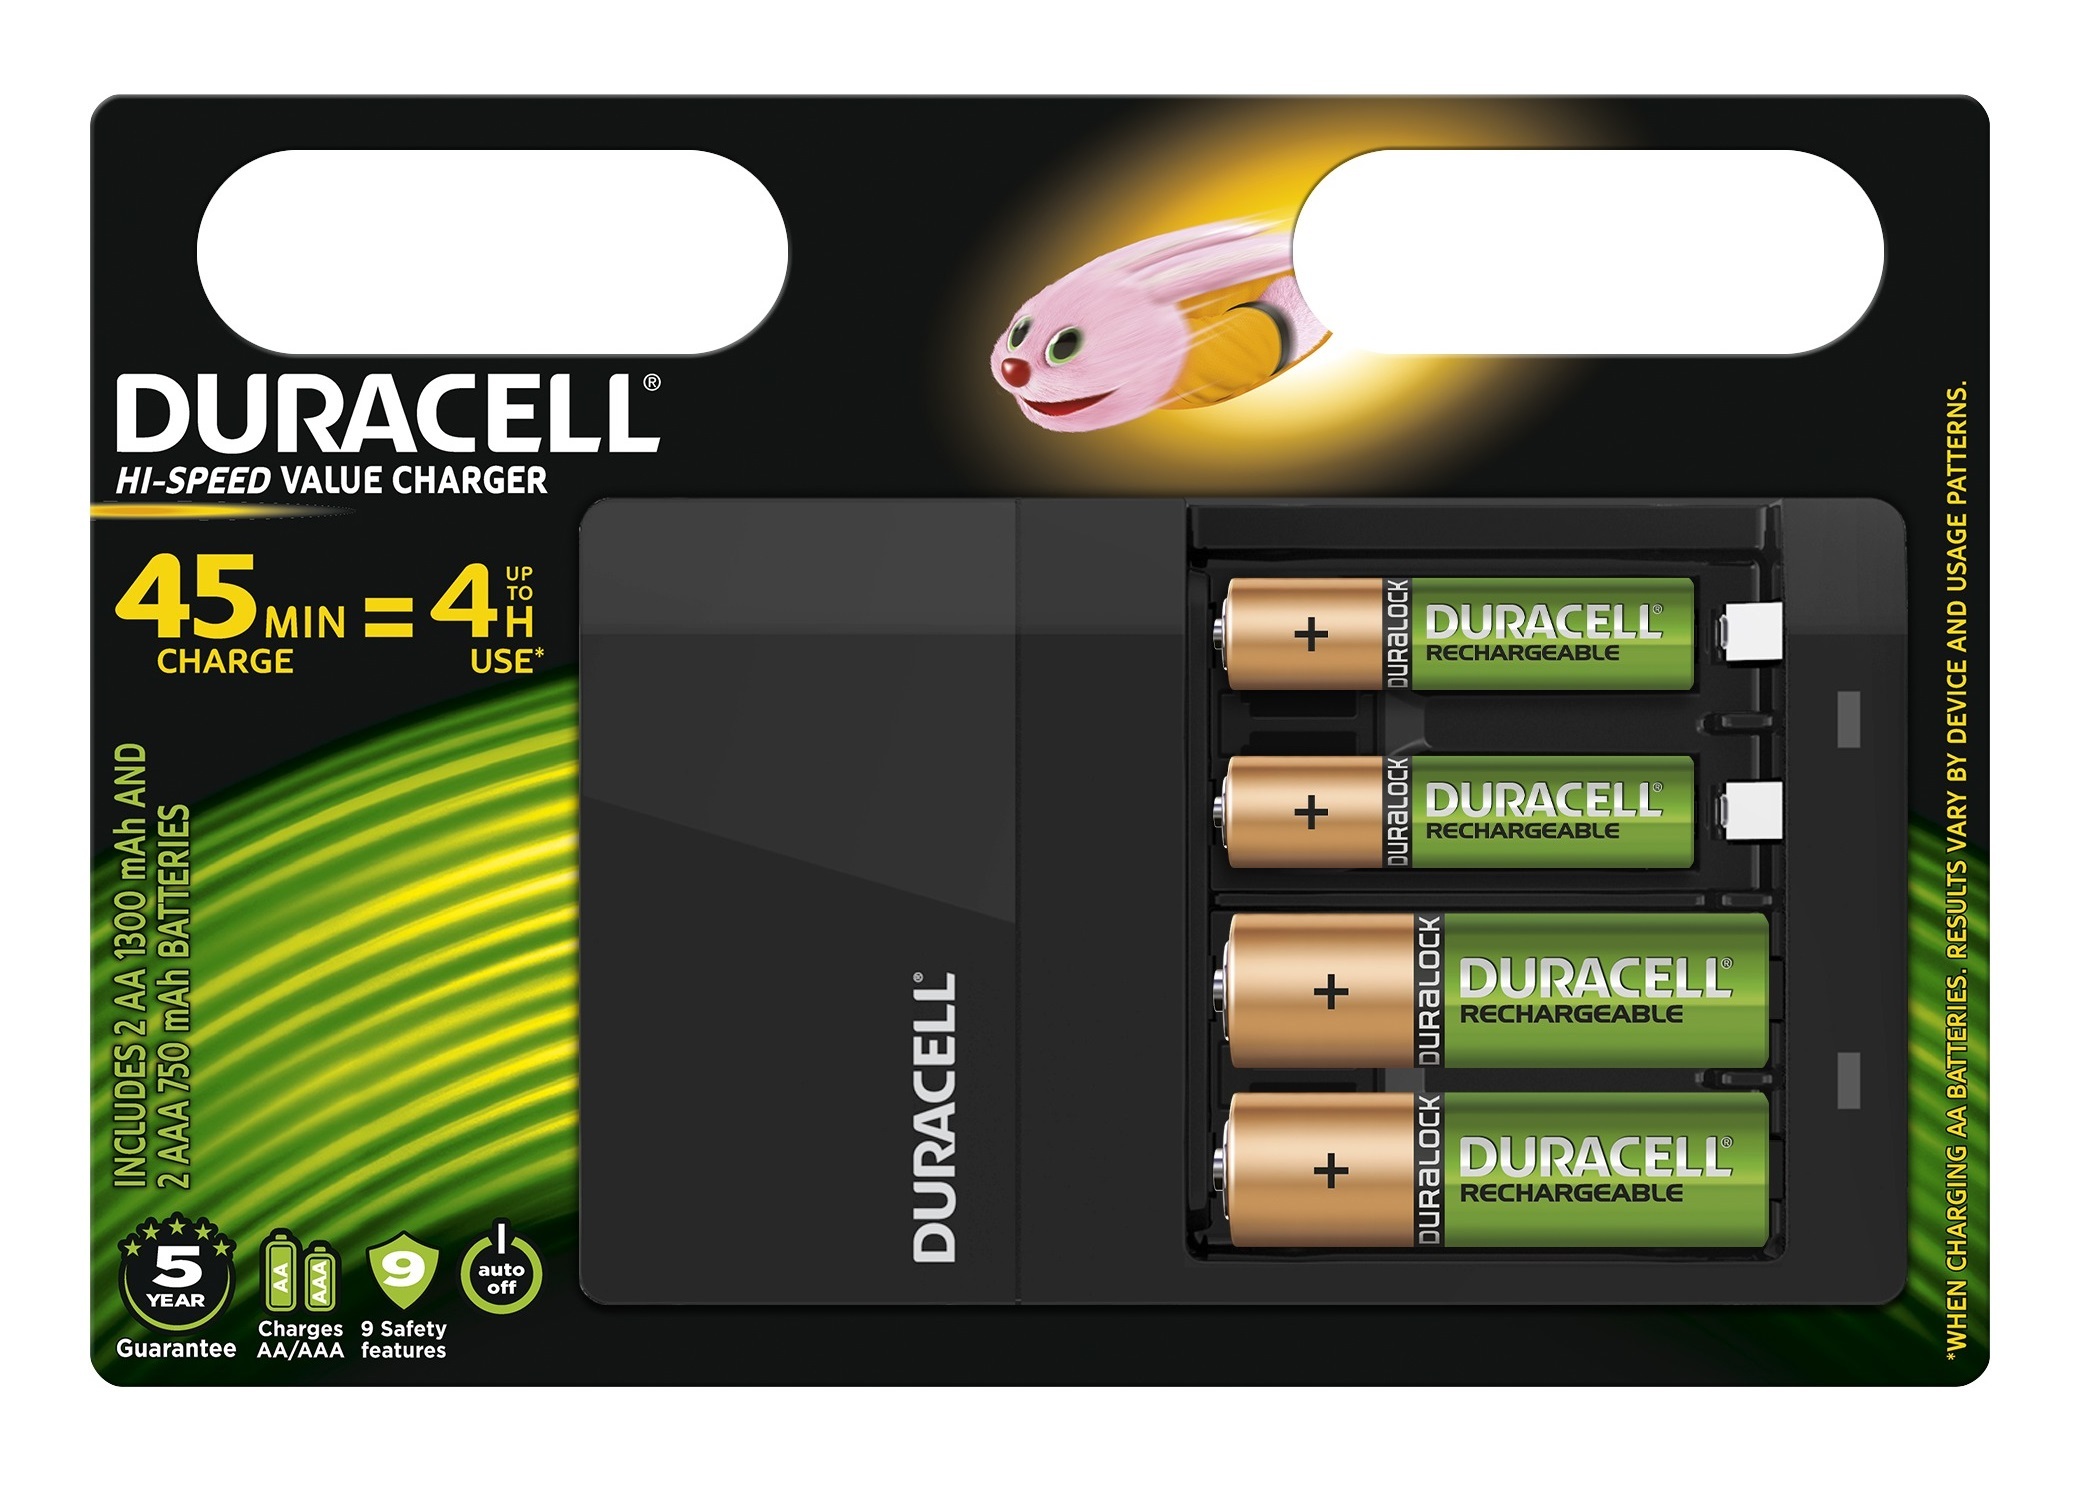 propeller Gedragen Omleiding Duracell 4 uur batterijlader, 1 tel batterijlader kopen? | Kieskeurig.nl |  helpt je kiezen